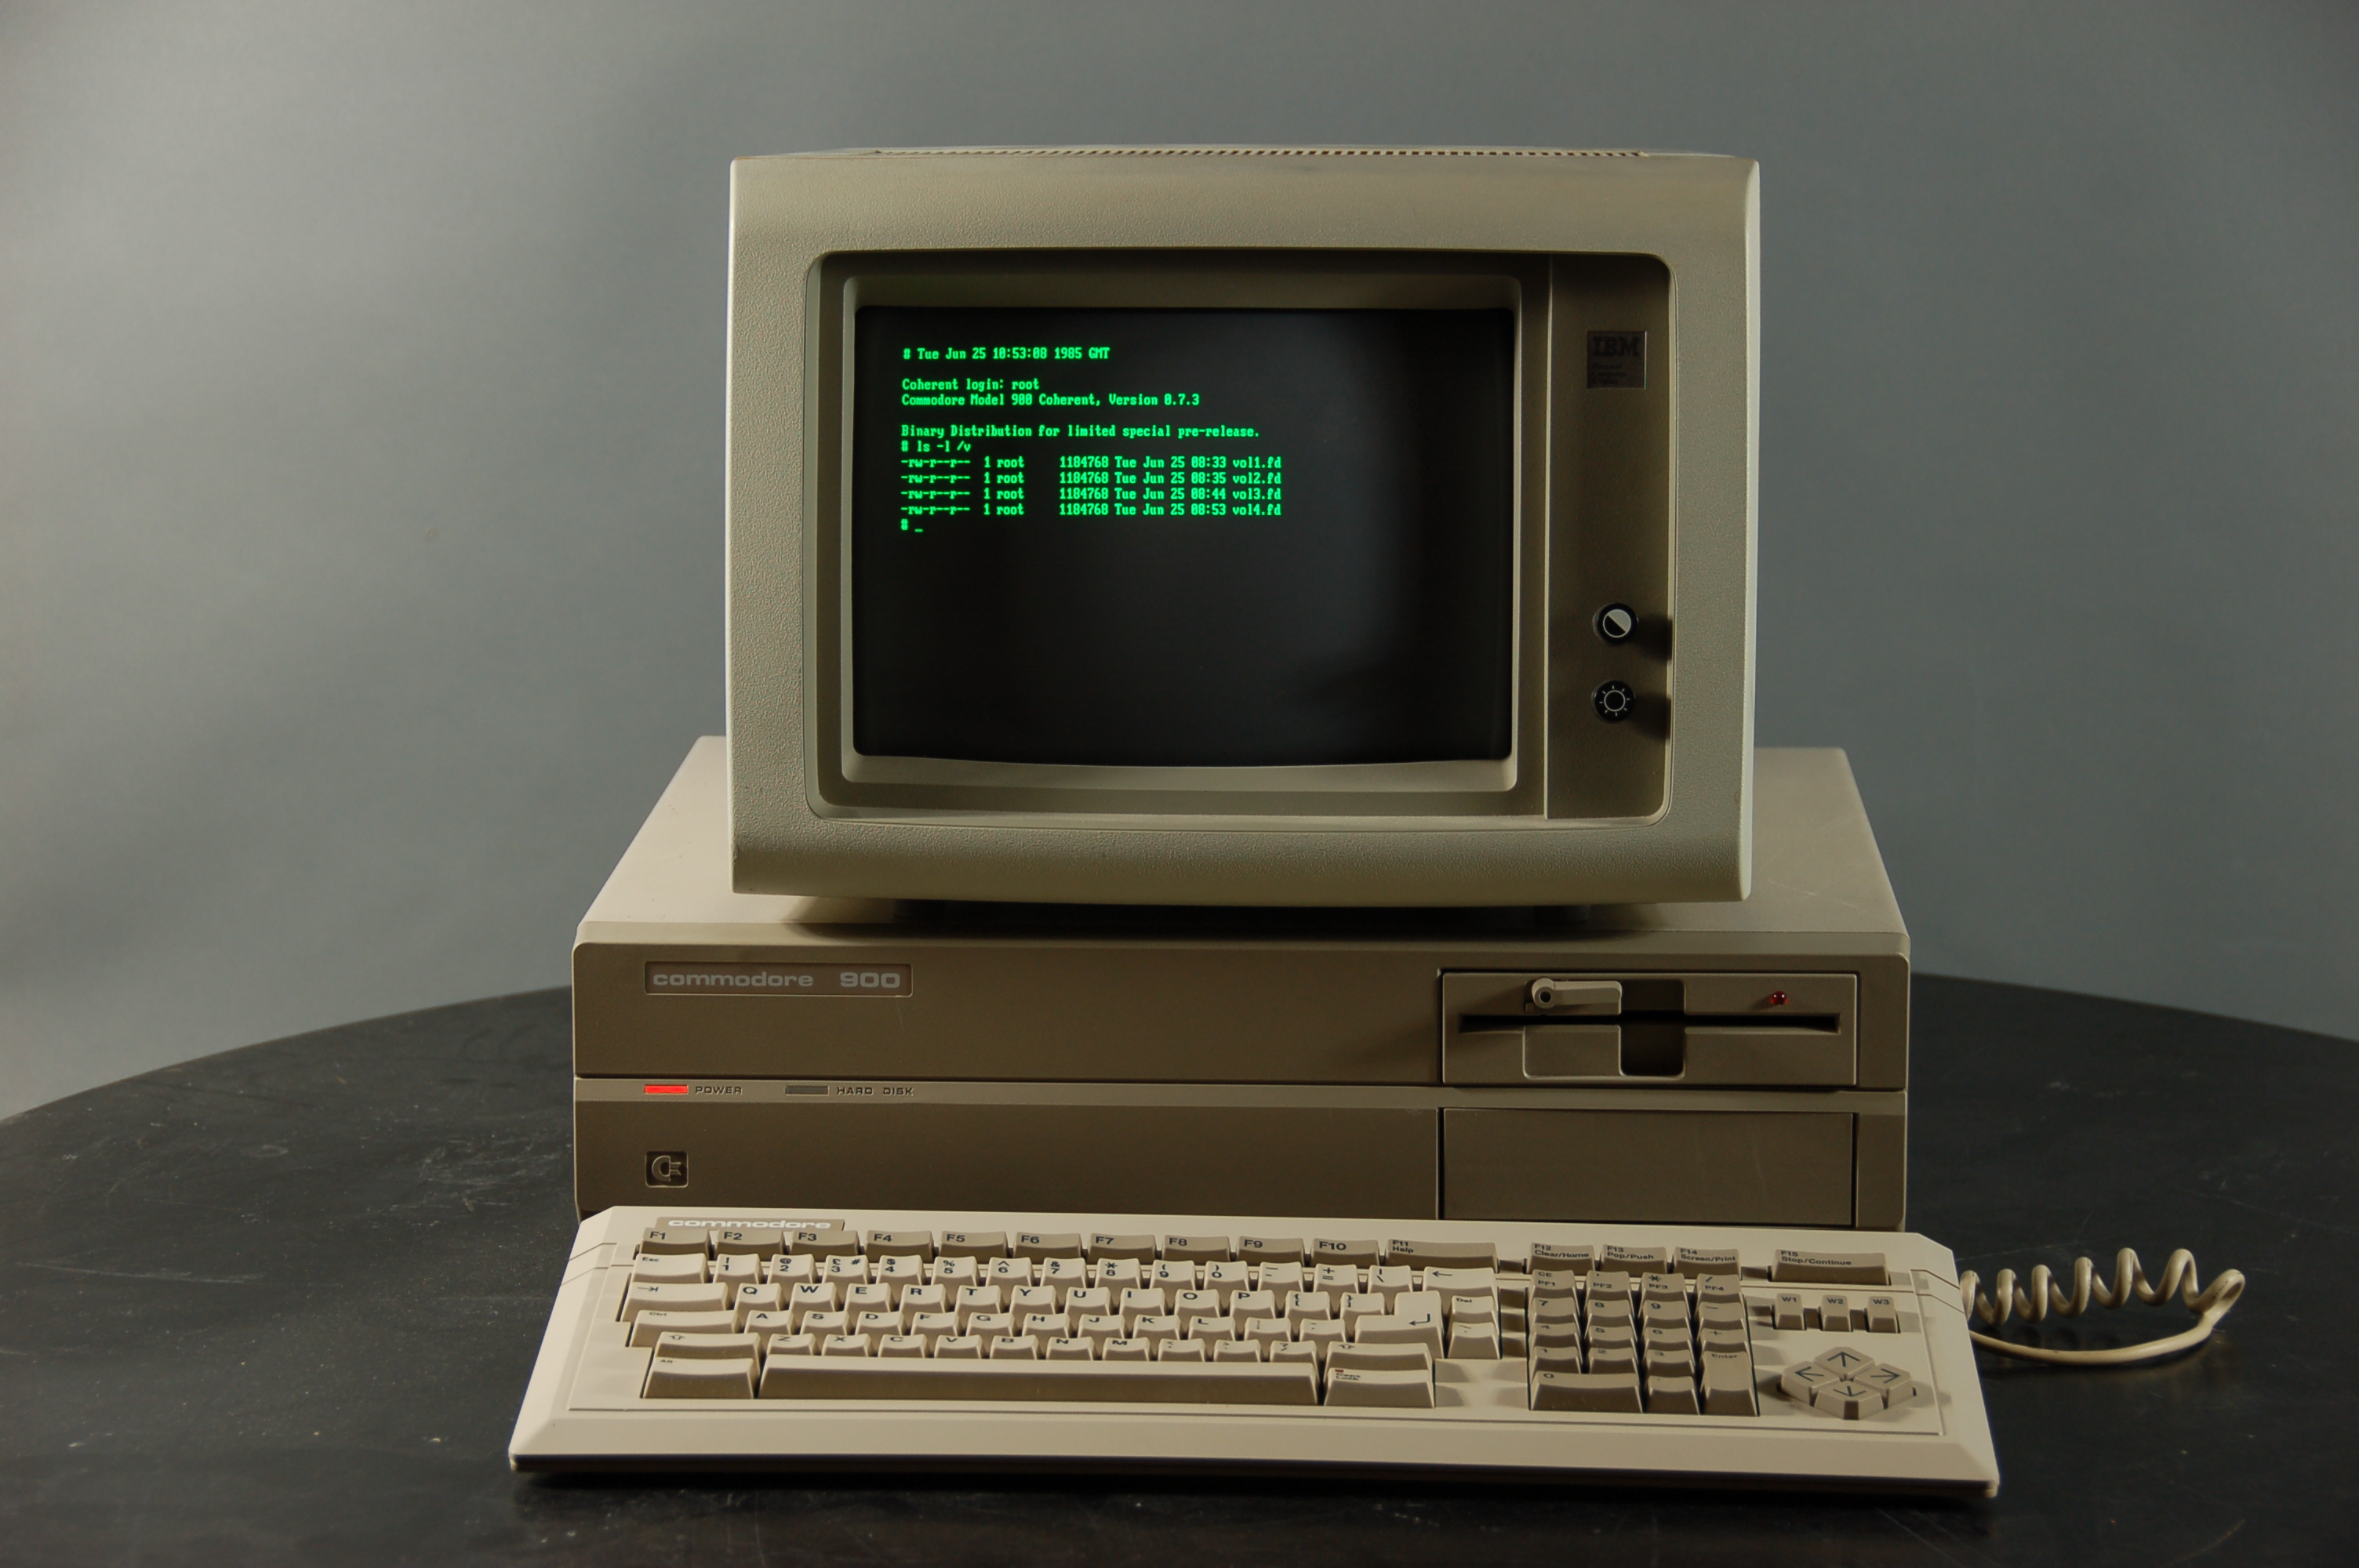 Commodore 900